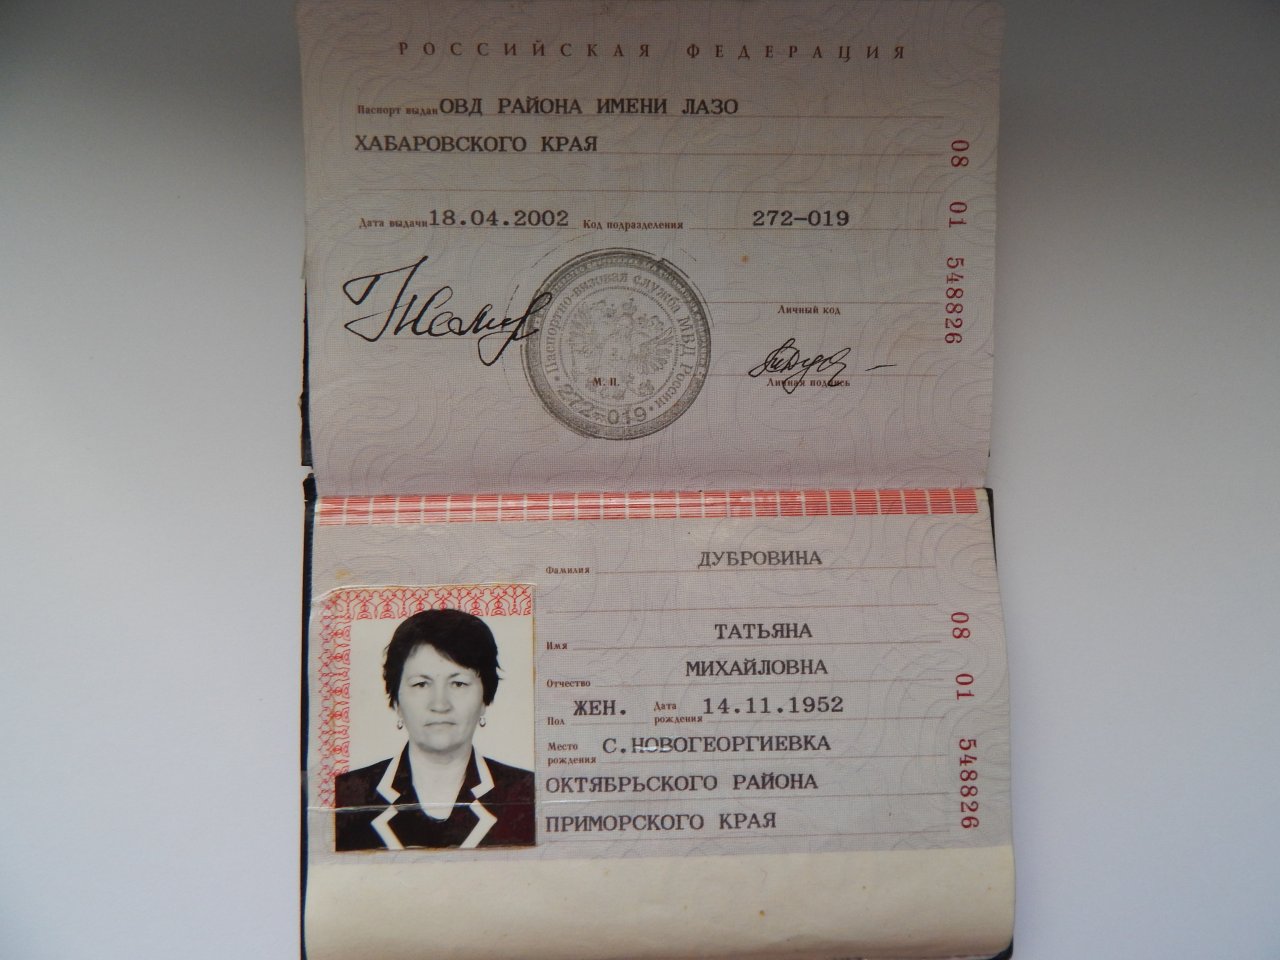 Код подразделения кемеровская область. Паспортные данные.